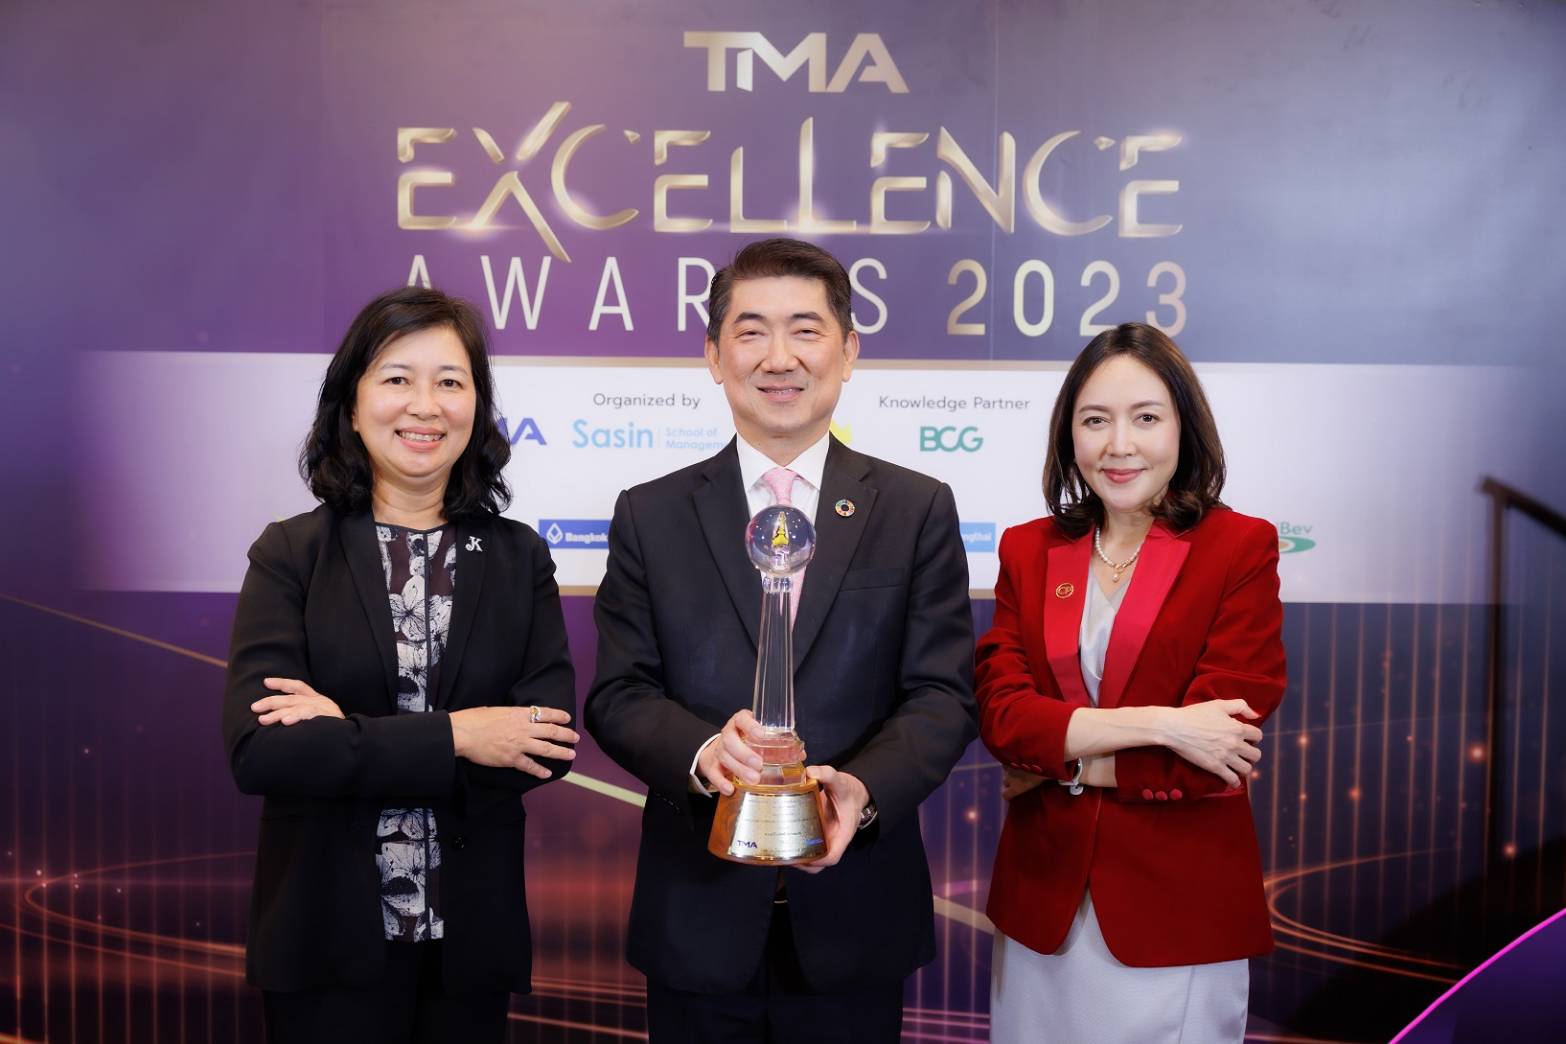 “ไก่ไทยจะไปอวกาศ" ของซีพีเอฟ รับรางวัลพระราชทาน&nbsp; Thailand Corporate Excellence Awards 2023&nbsp;สาขาความเป็นเลิศด้านการตลาด